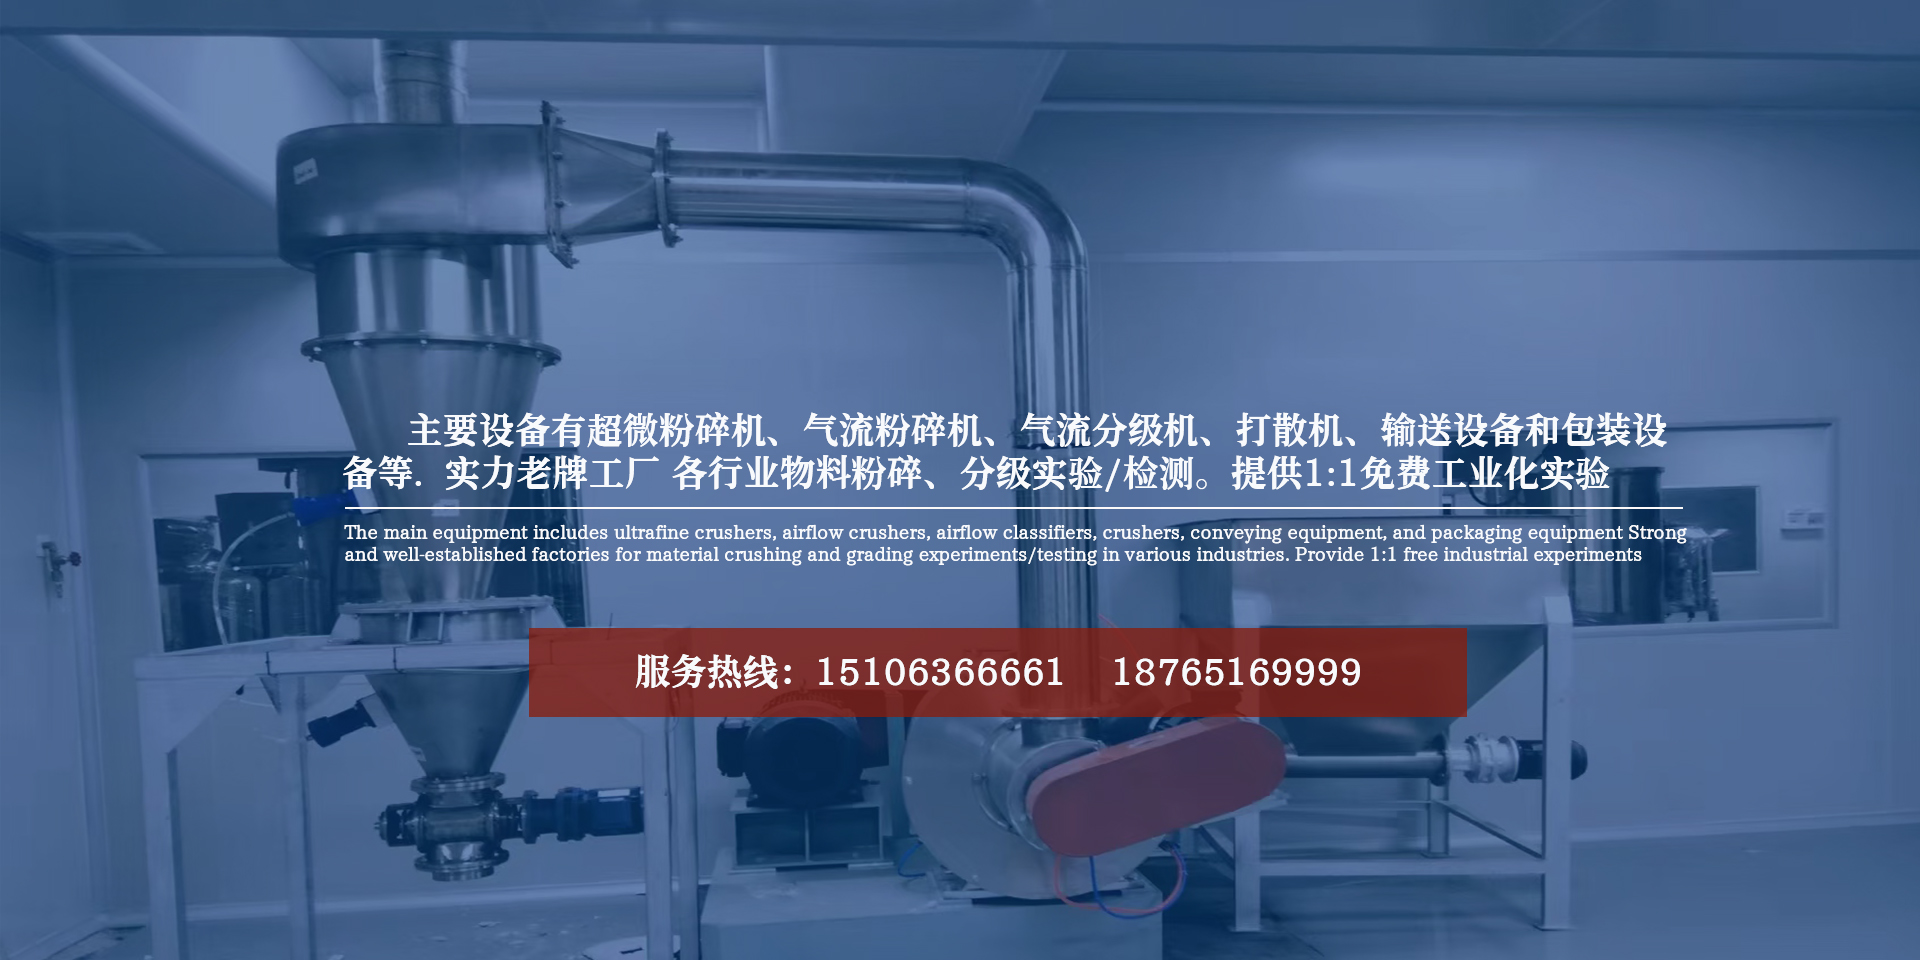 潍坊新亚能粉体设备有限公司